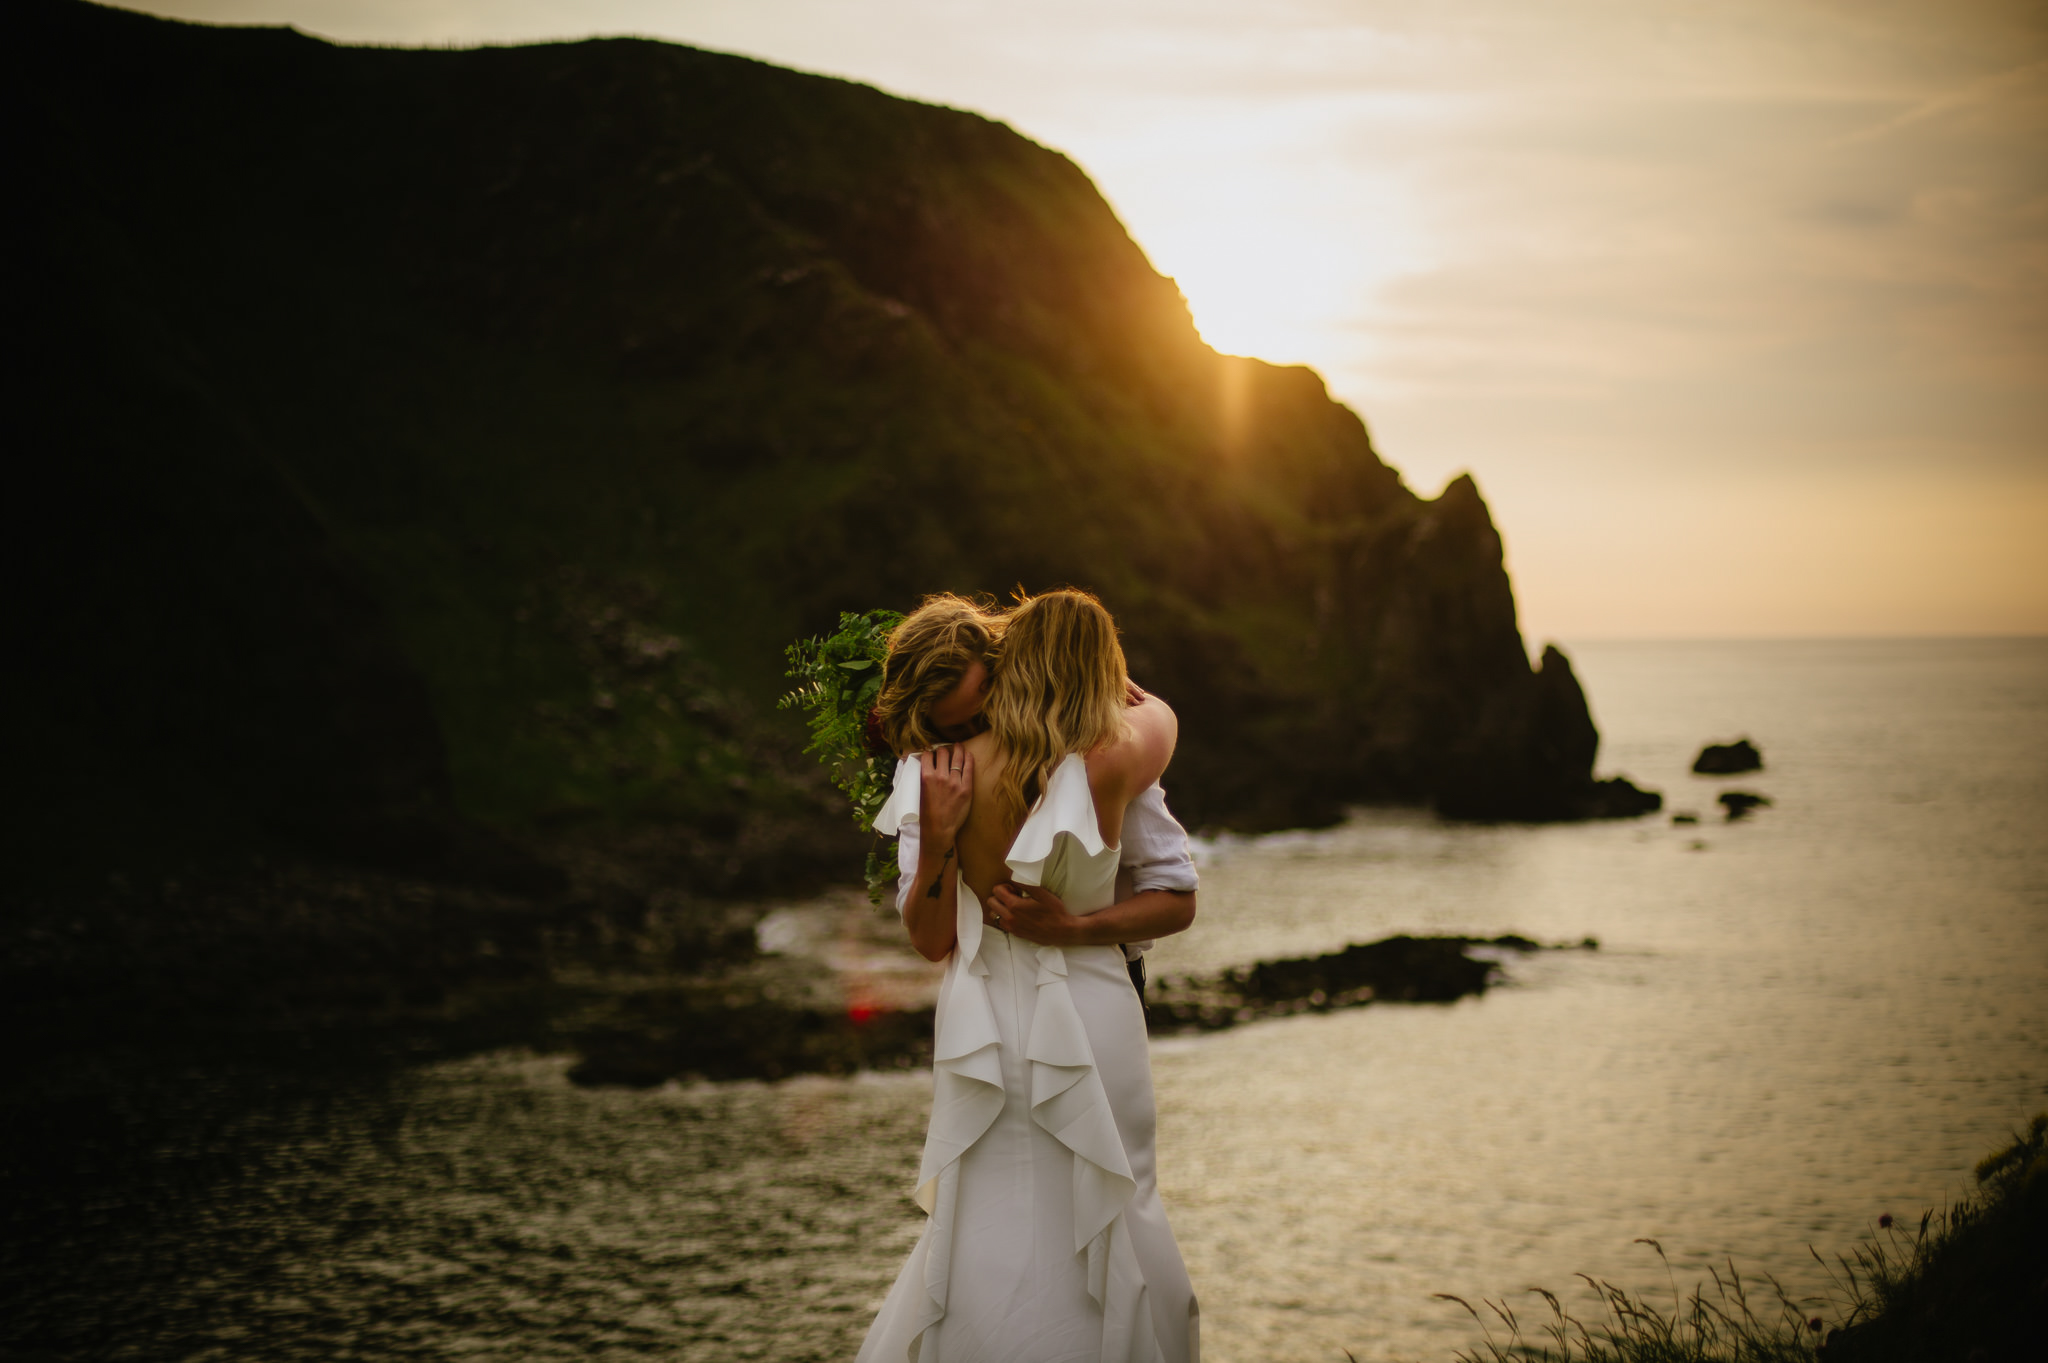 Boho Ireland Elopement Amber Baruch Photography Something Blue Weddings Blog